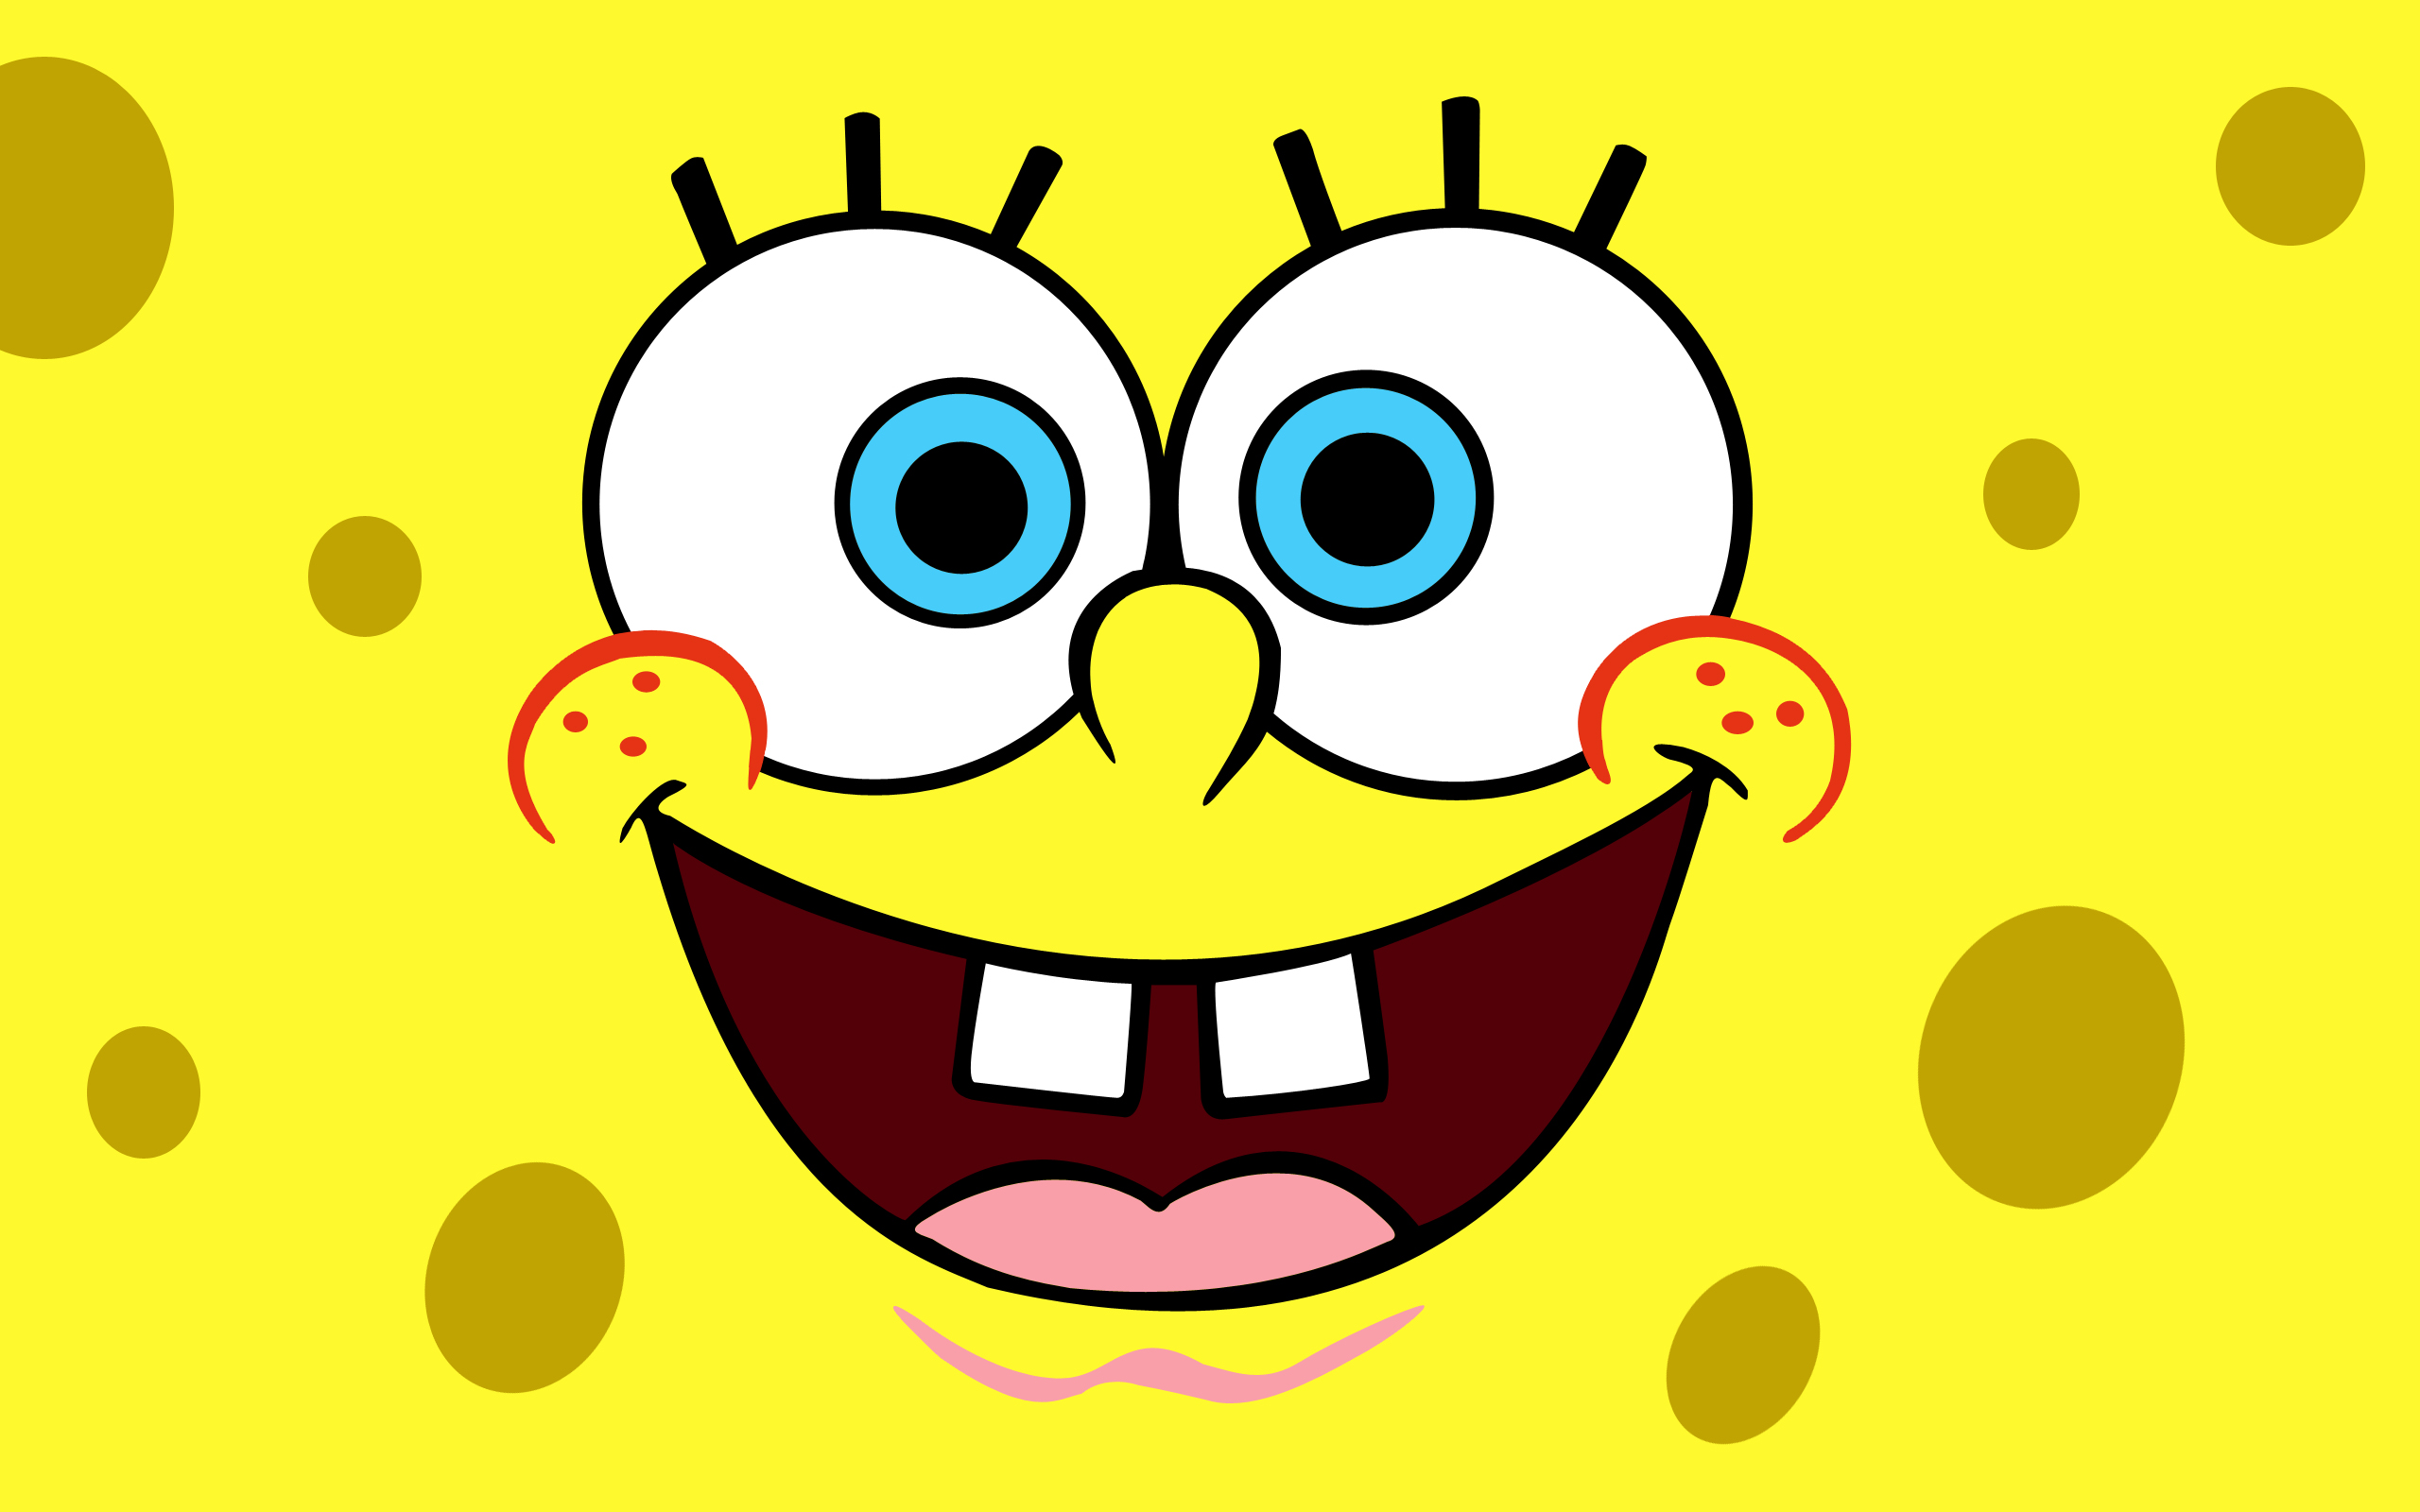 SpongeBob SquarePants wallpapers HD laugh